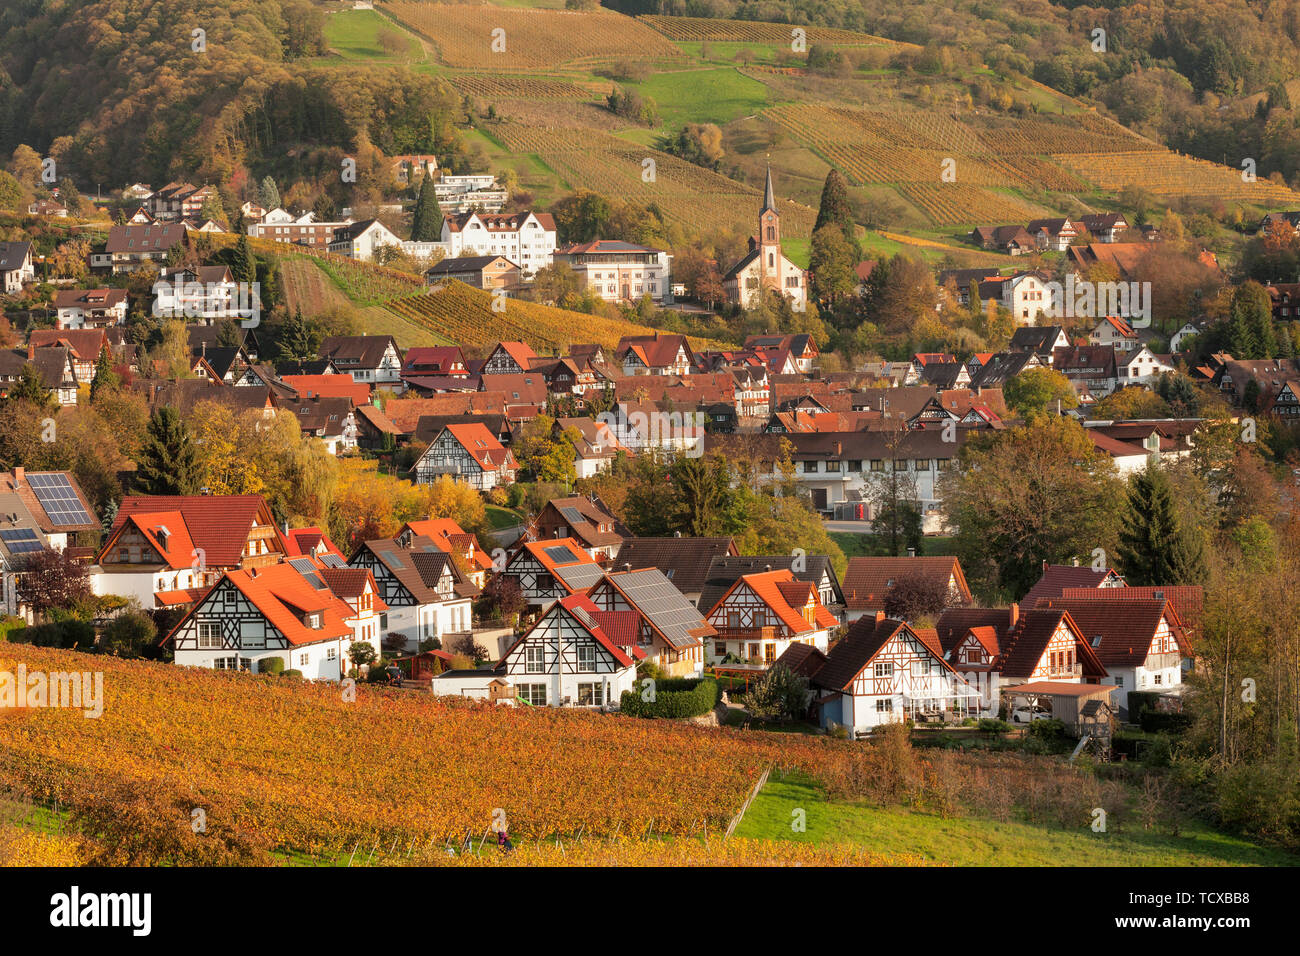 Maisons à colombages, Sasbachwalden, Forêt-Noire, Bade-Wurtemberg, Allemagne, Europe Banque D'Images